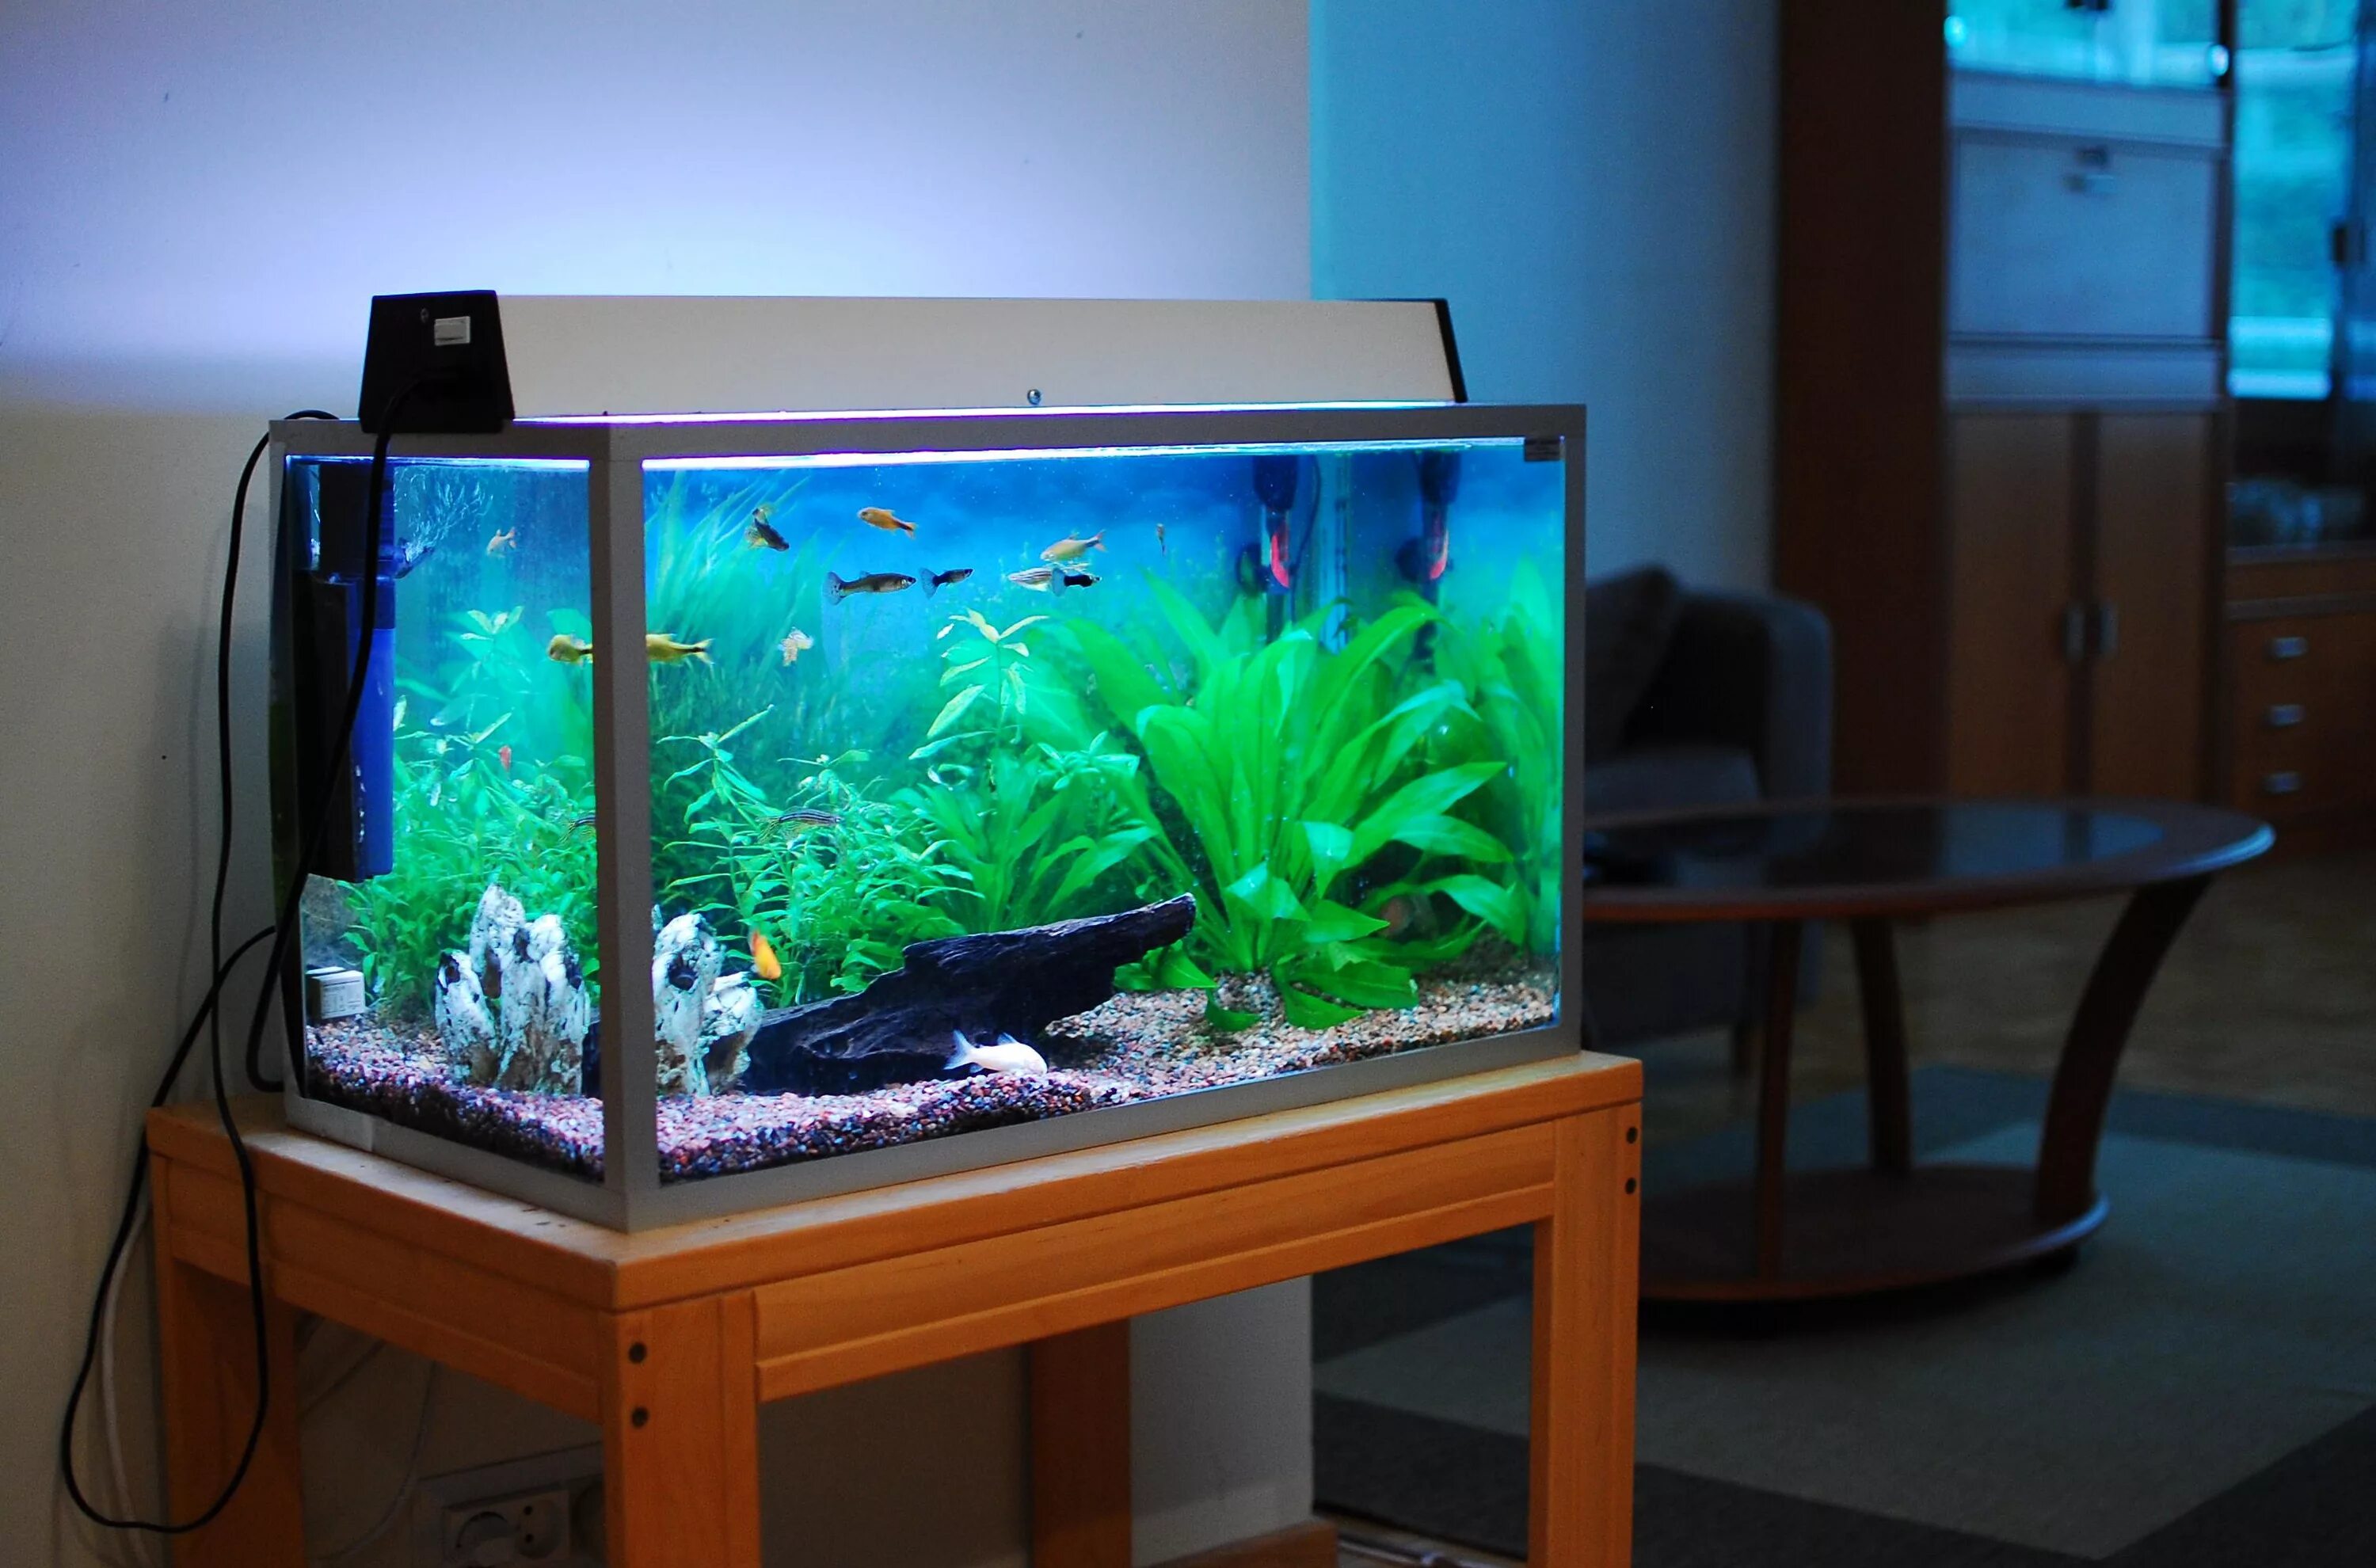 Аквариум (Fish Tank) 2009. Нано травник аквариум. Аквариум домашний с рыбками. Небольшой аквариум с рыбками. Большом аквариуме рыбок 10